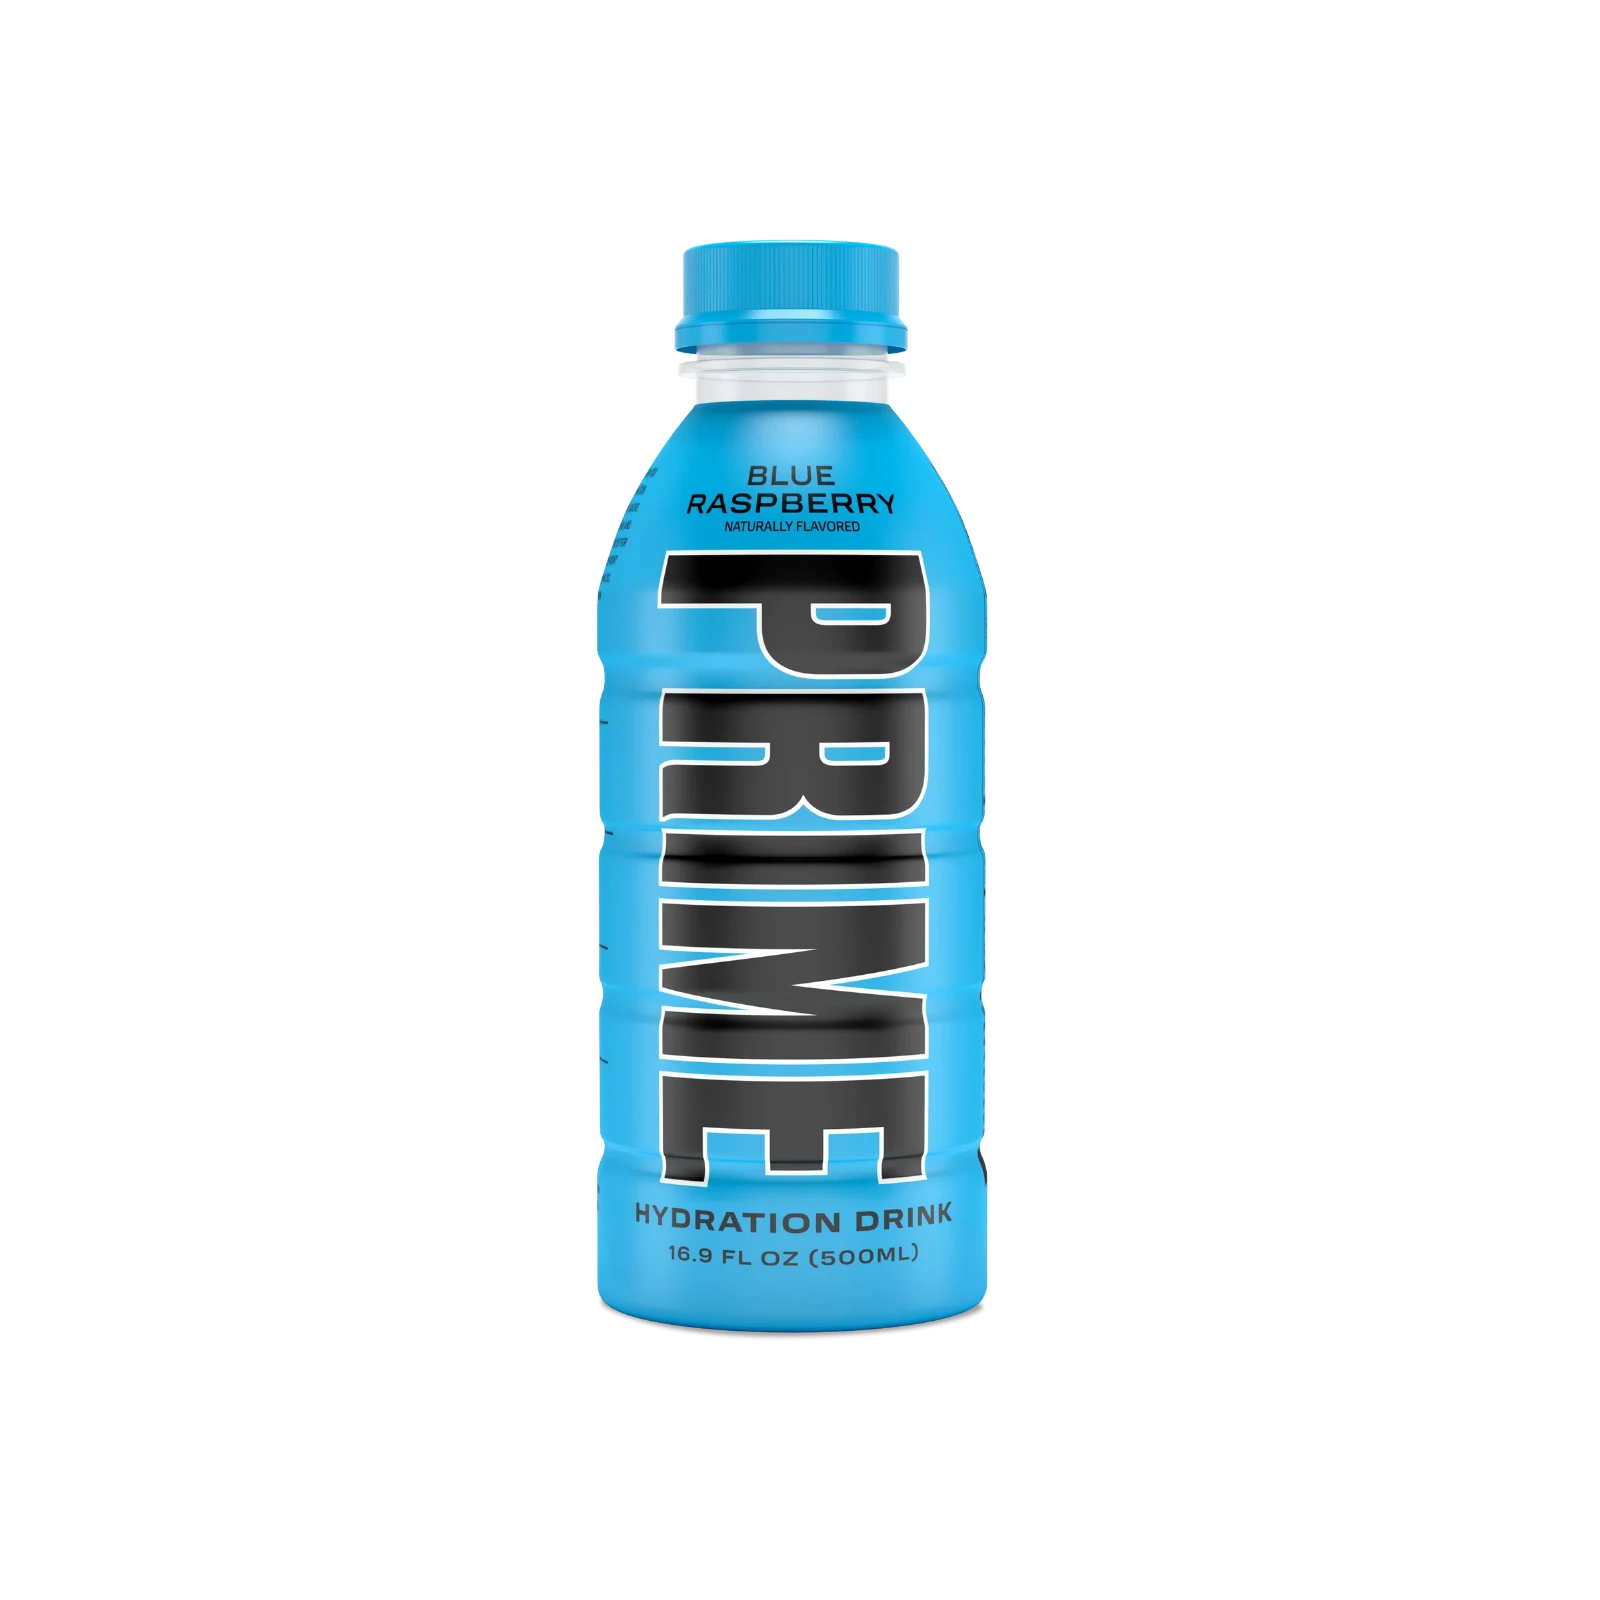 Prime Hydration - Sportdrink - Blue Raspberry - 500 ml - Energy Drink von Logan Paul und KSI - Aus den USA 2